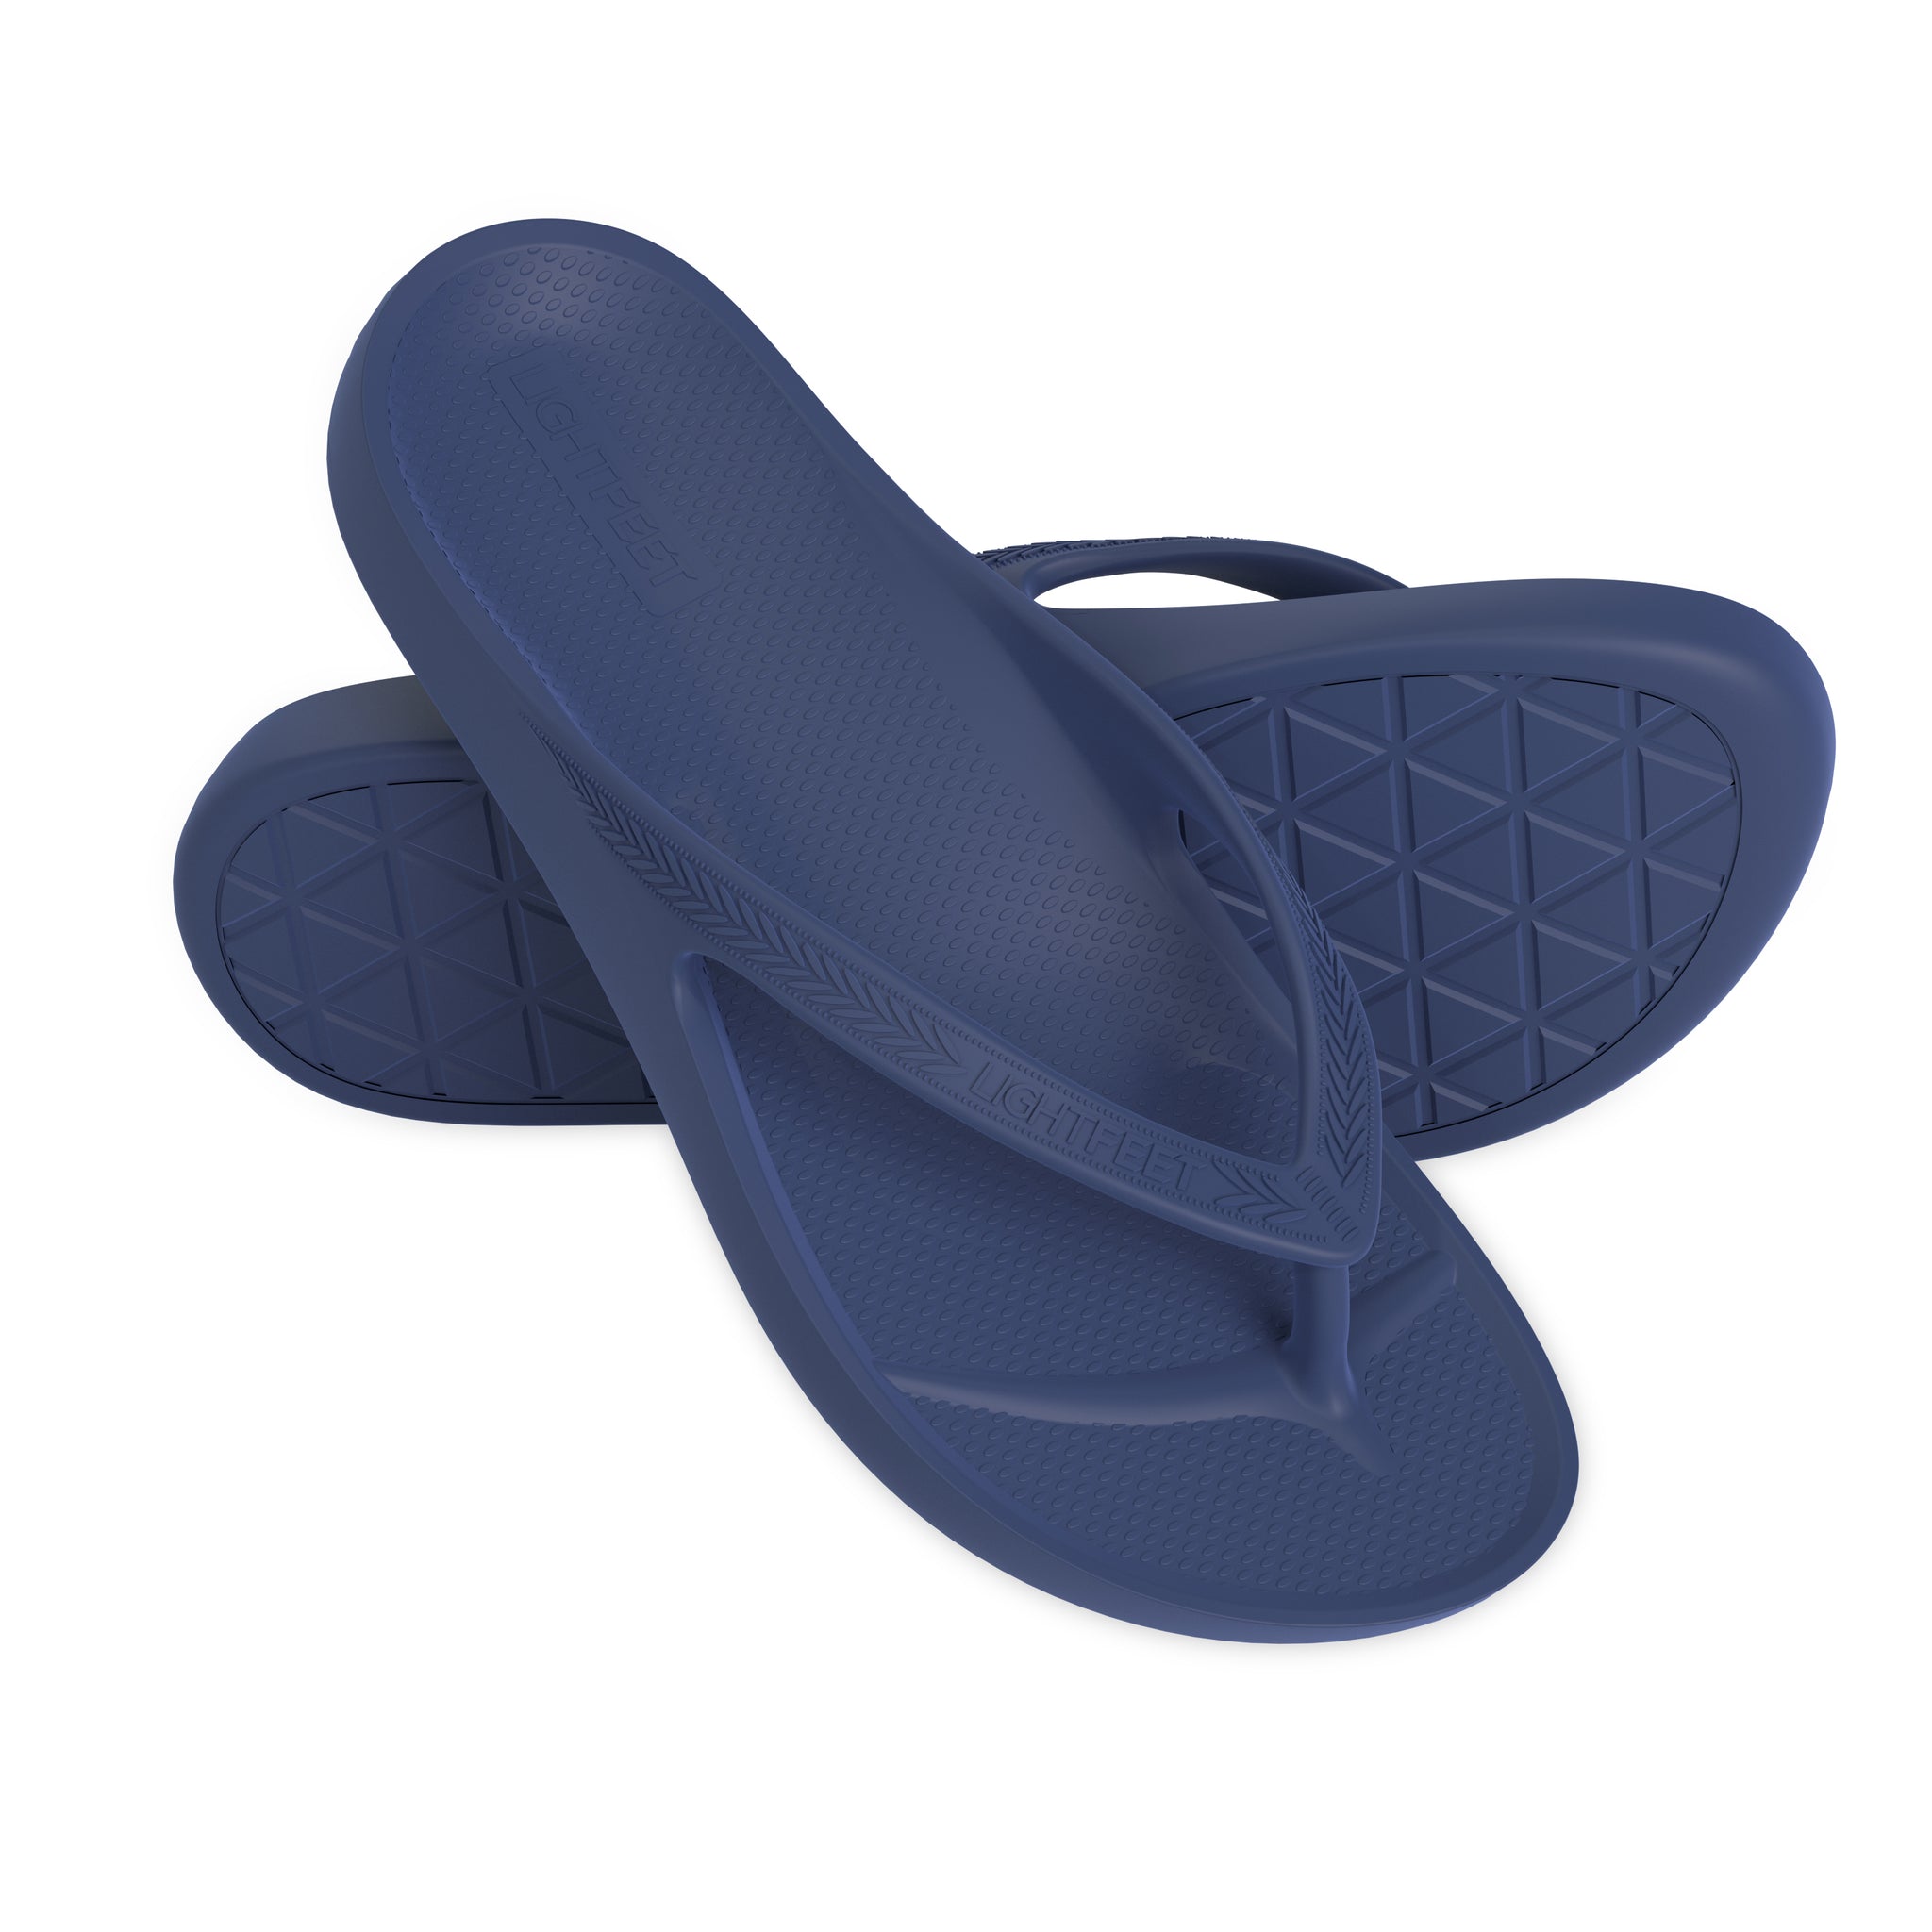 LightFeet Arch Support Flip Flops – Australian Podiatrists Designed  FlipFlops for Women & Men Prevent Tired Aching Legs | Unisex Orthotic  Plantar